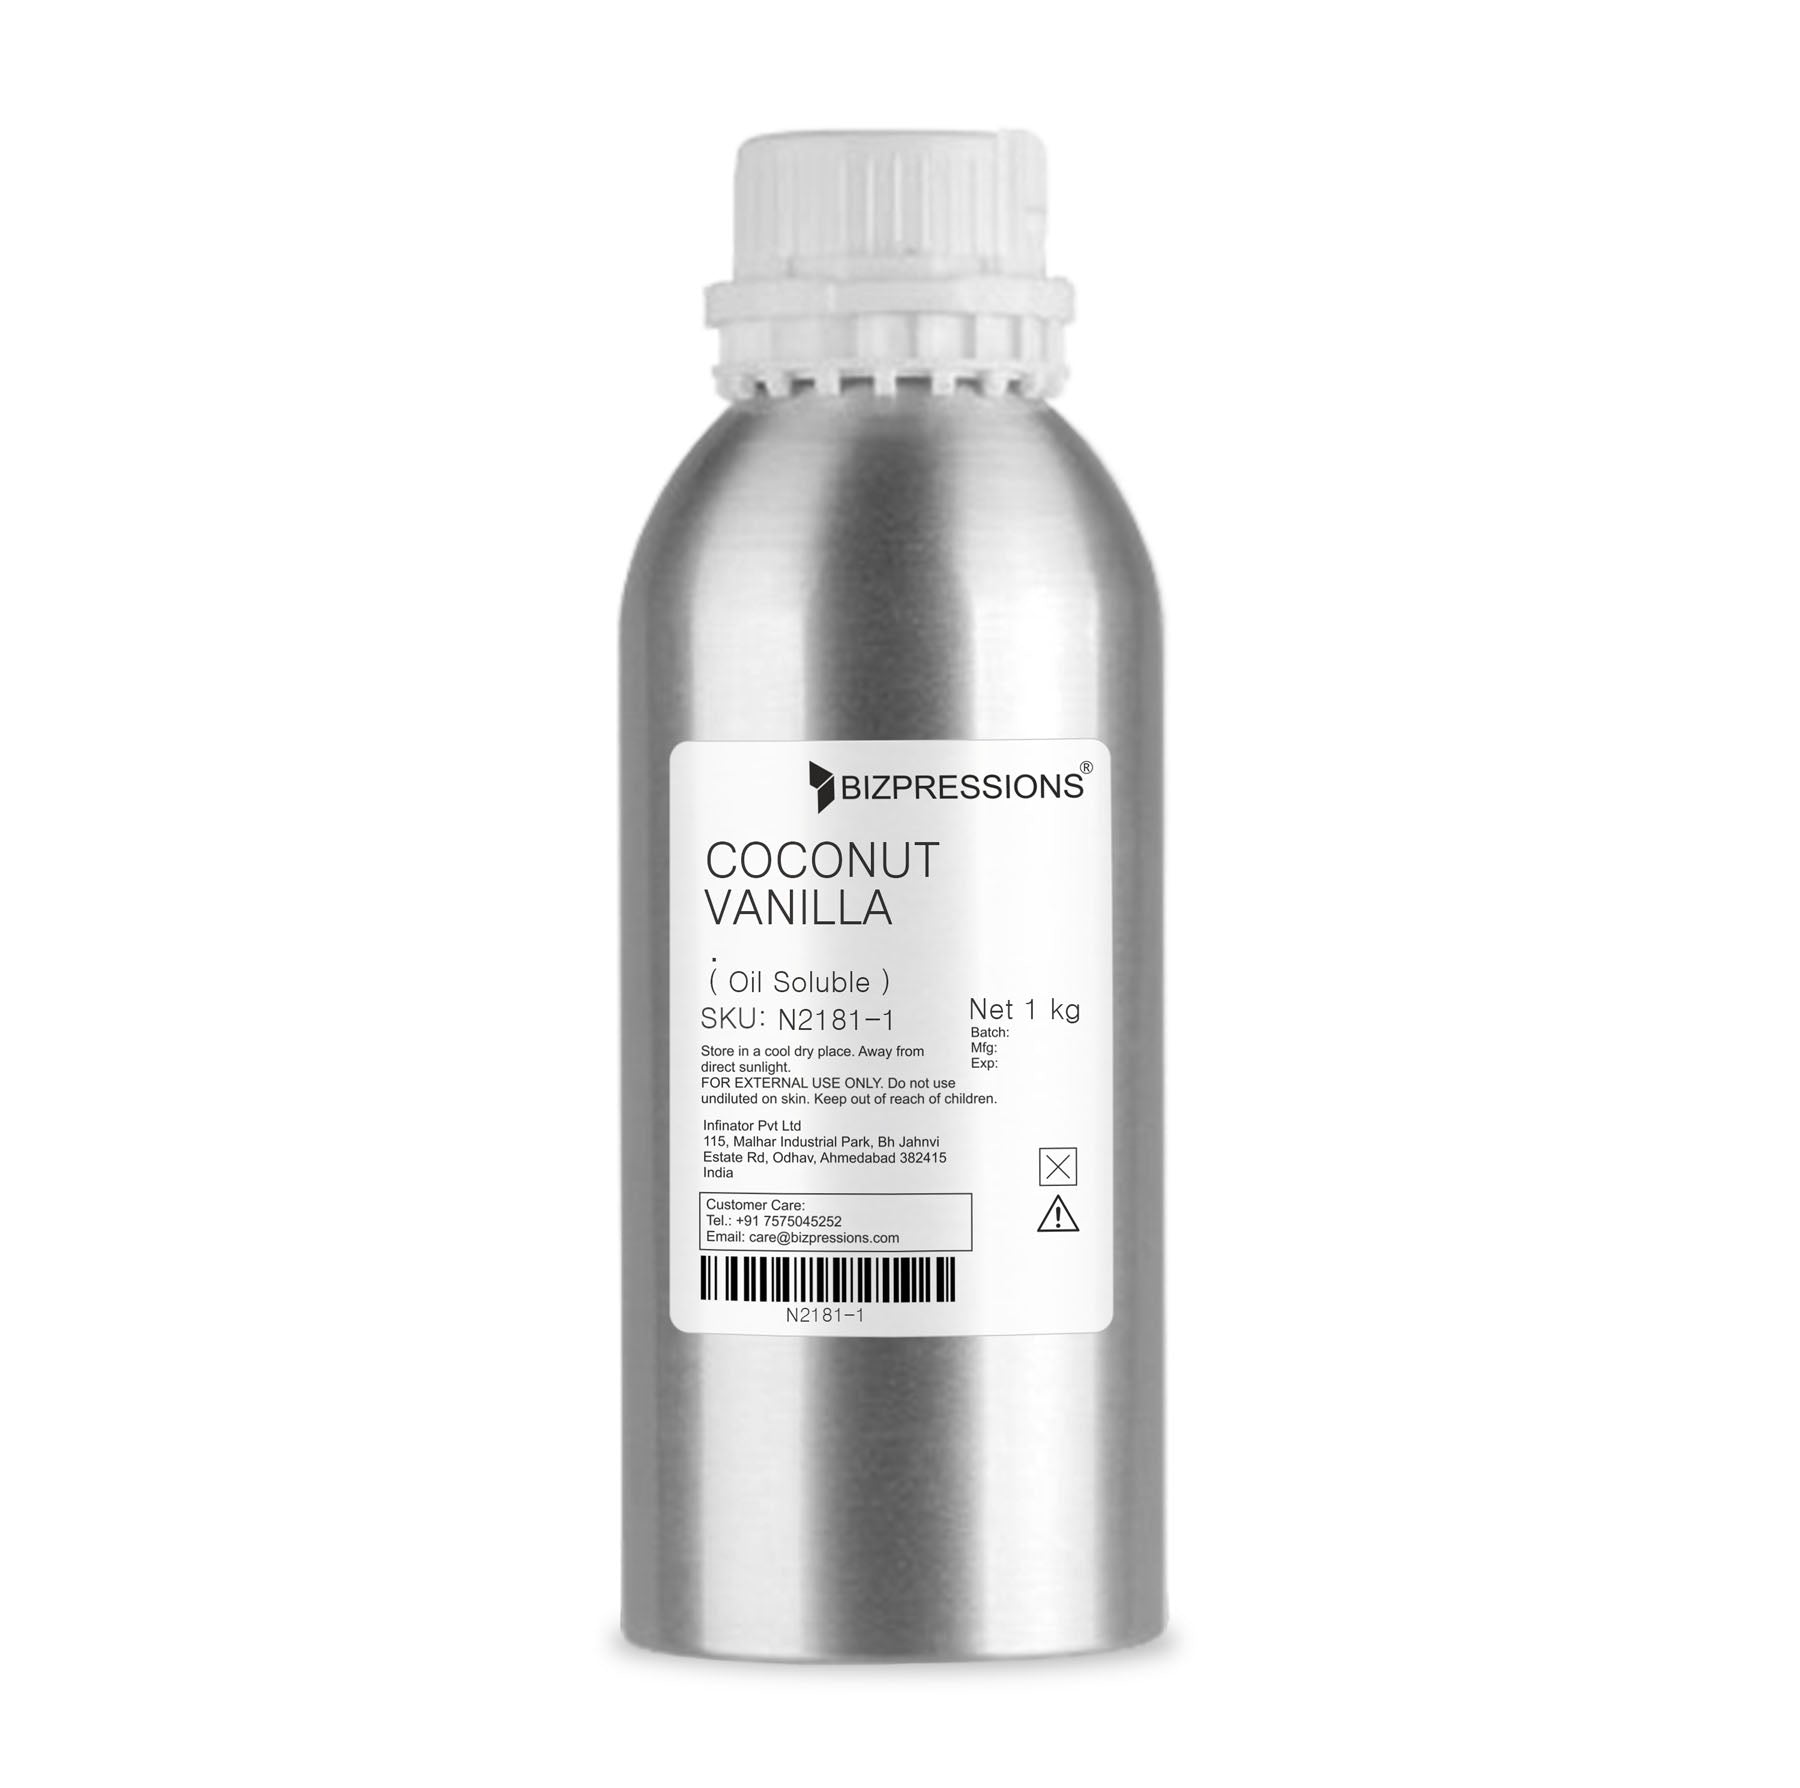 COCONUT VANILLA - Fragrance  Oil Soluble ) - 1 kg